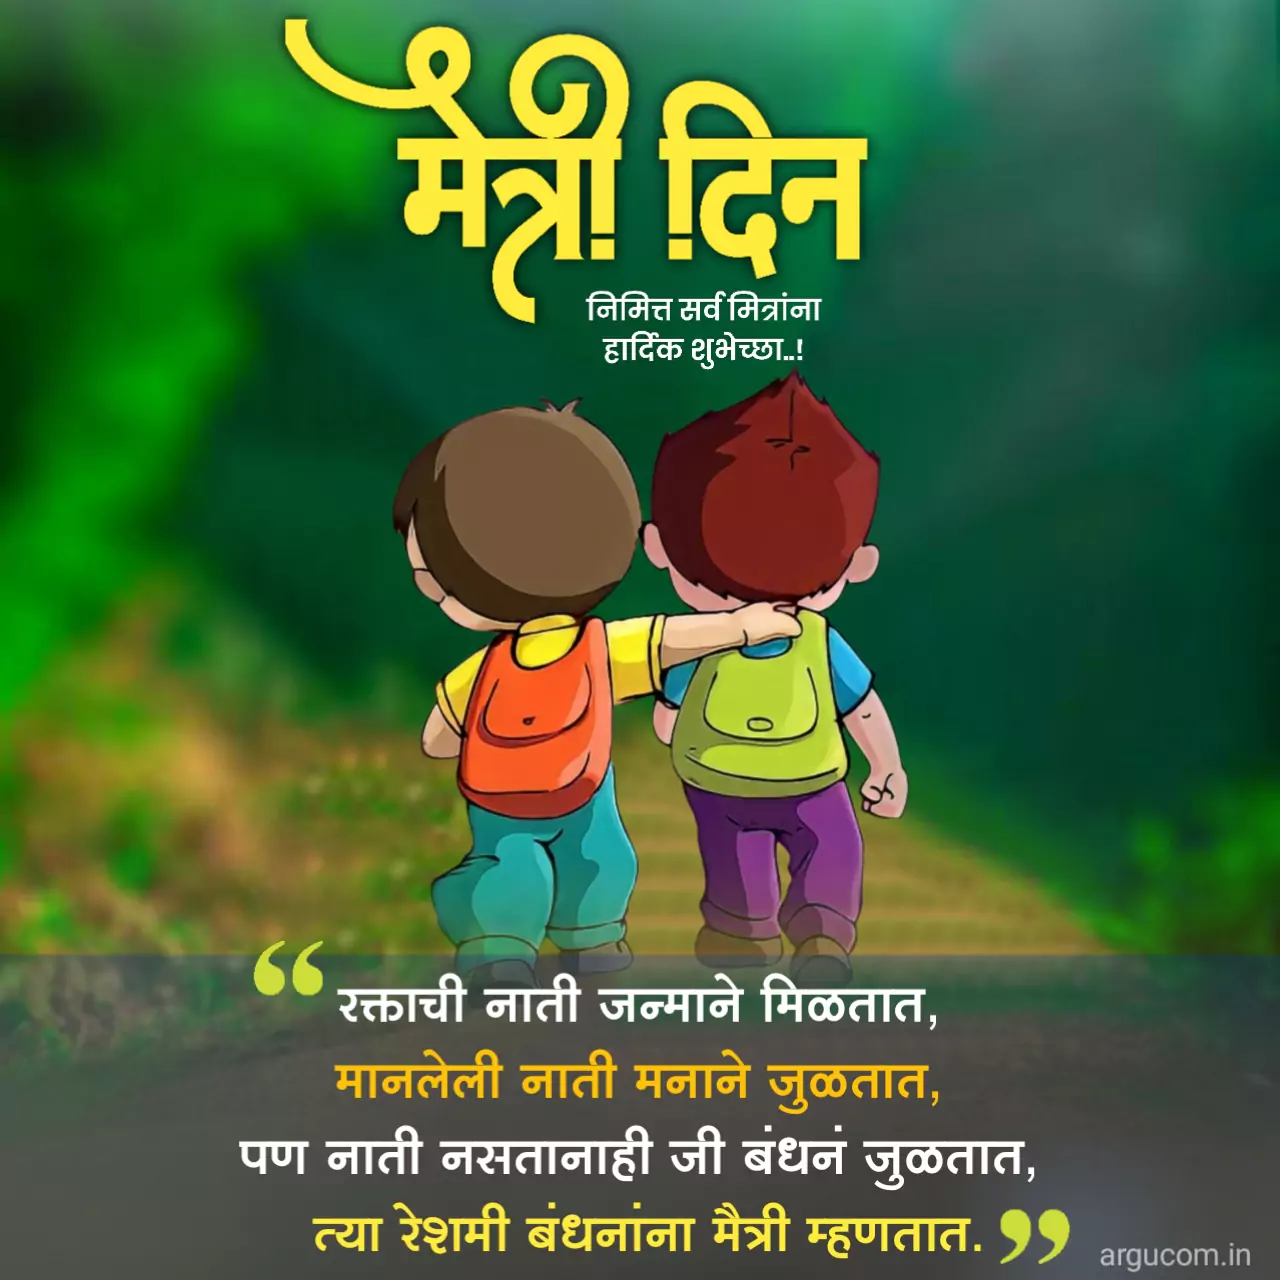 Friendship Day Quotes In Marathi, मैत्री दिनाच्या हार्दिक शुभेच्छा